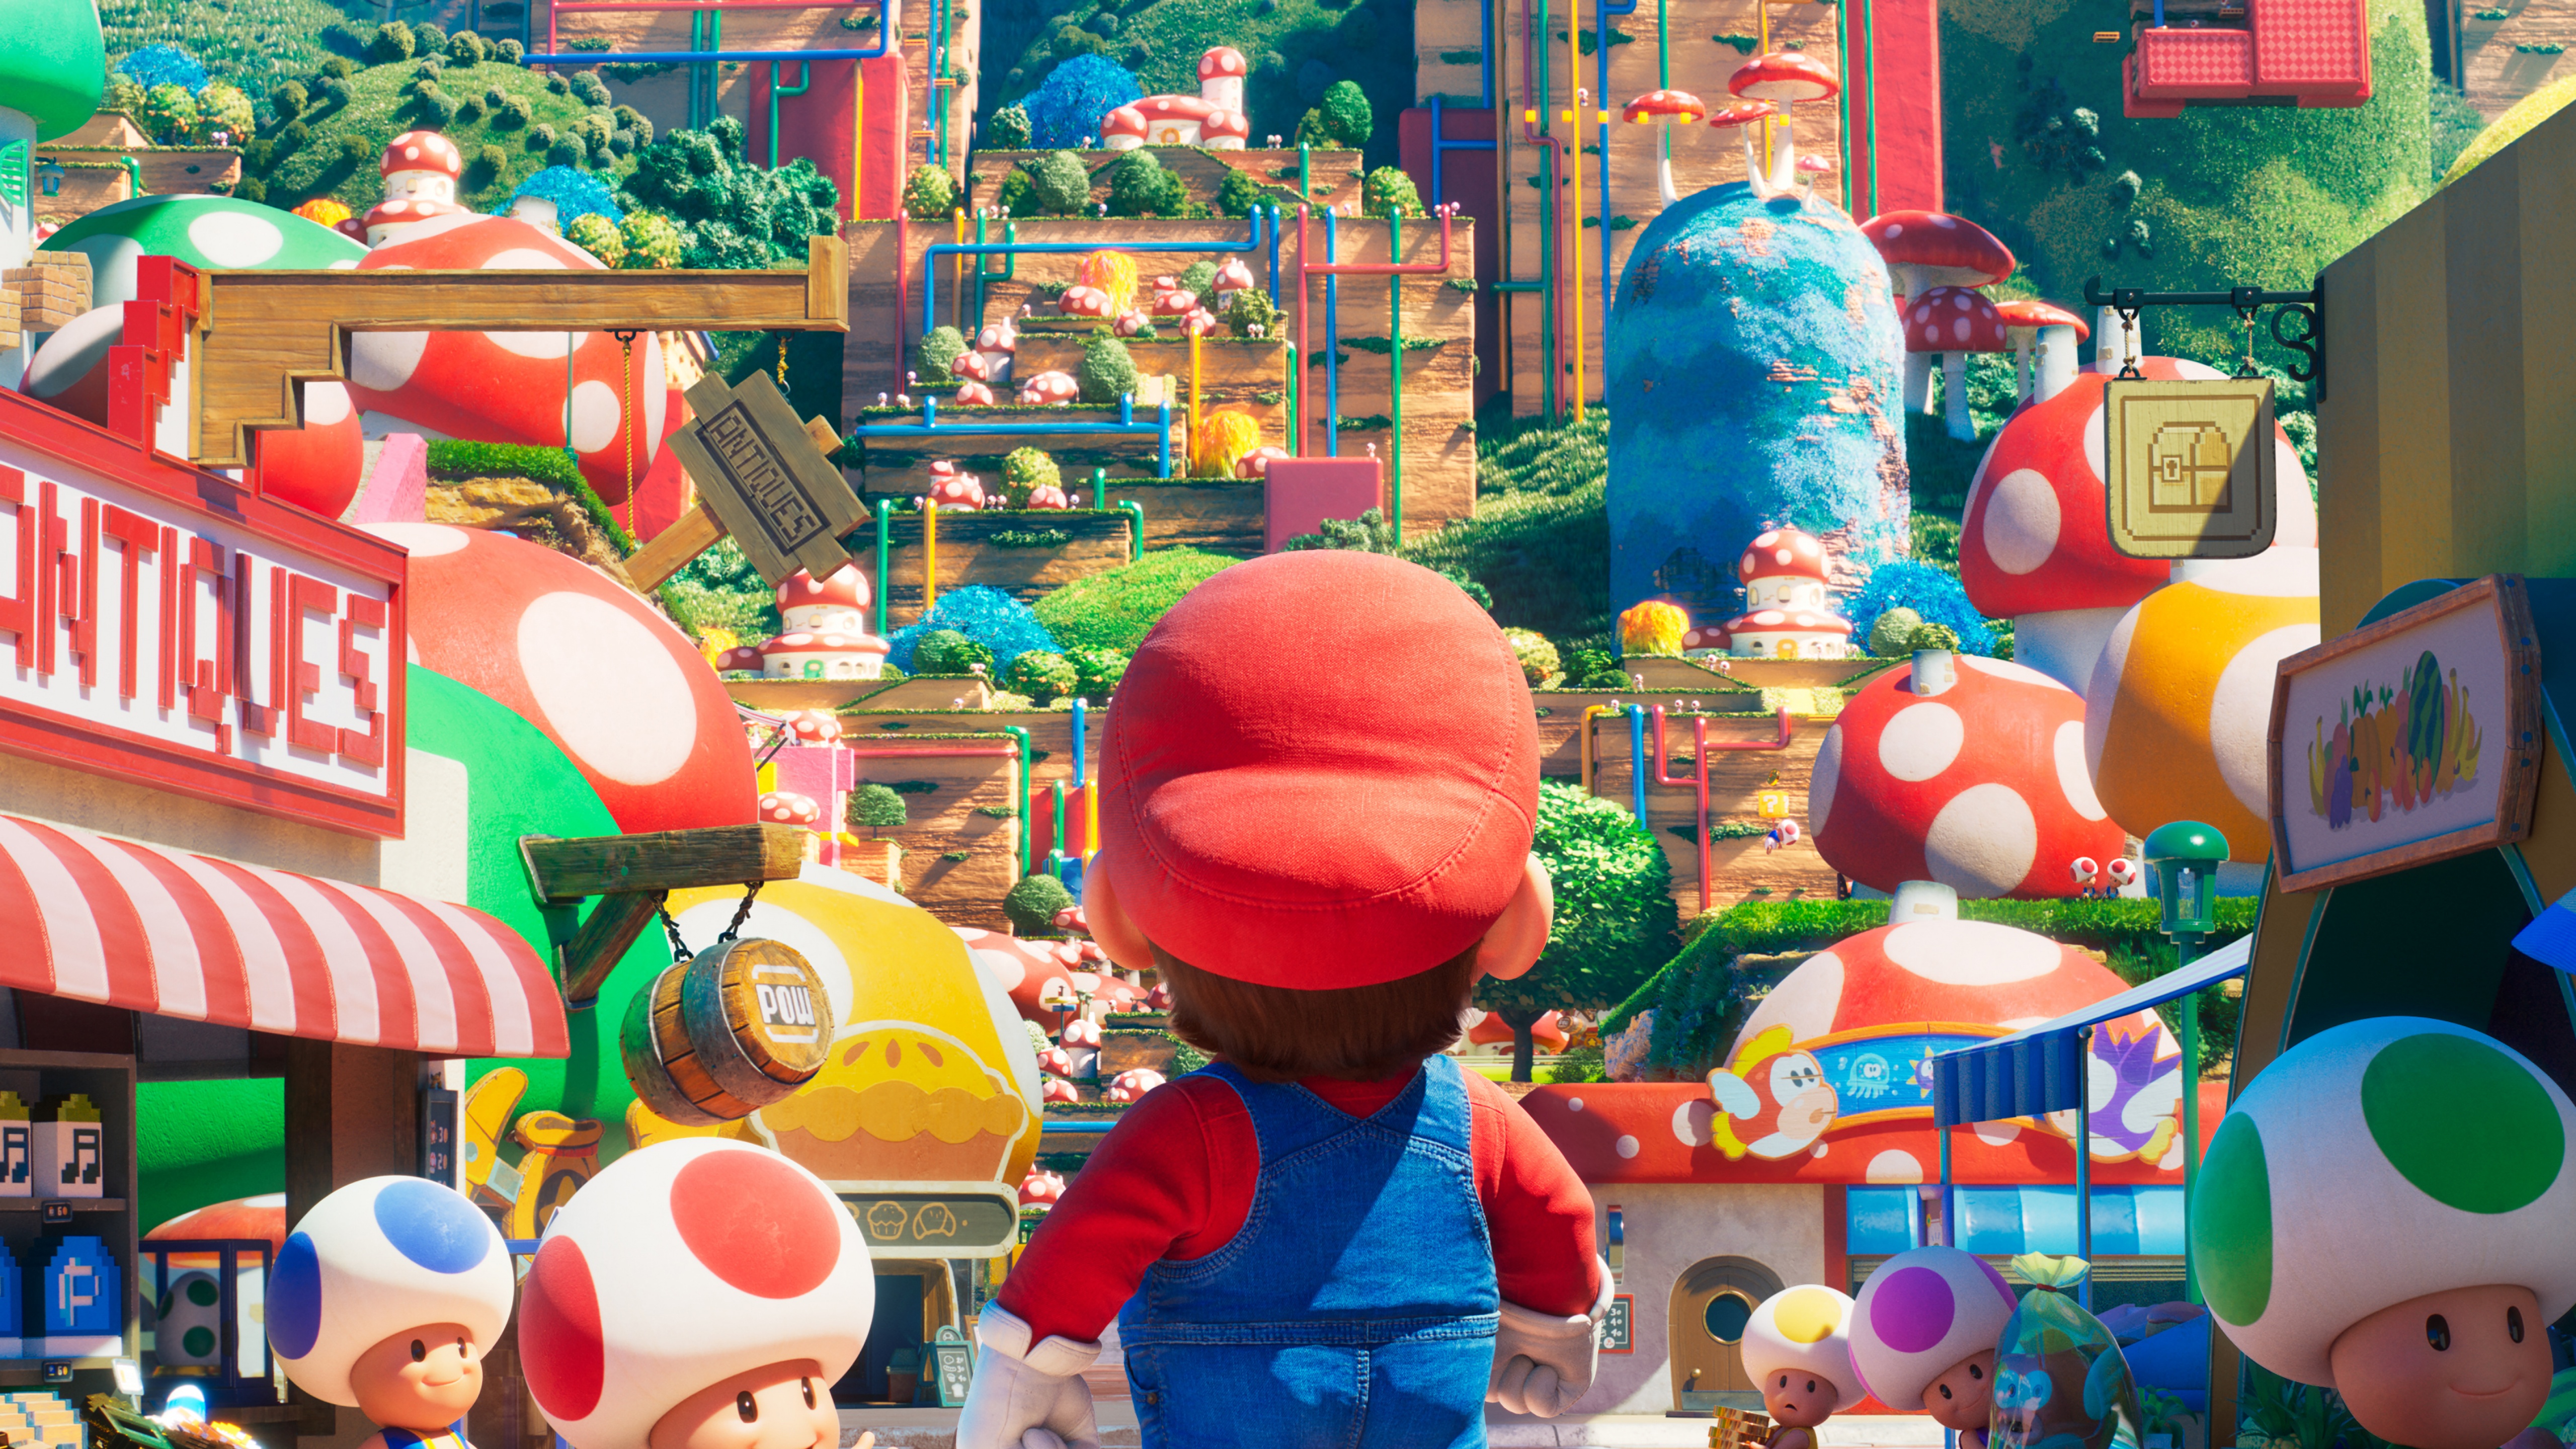 Hãy chiêm ngưỡng bức tranh nền Super Mario Bros. 4K đầy màu sắc và hài hước này! Được lấy cảm hứng từ trò chơi kinh điển, bức tranh truyền tải một không khí vui nhộn và đầy năng lượng. Với độ phân giải 4K sắc nét, bạn sẽ cảm thấy như đang trong thế giới huyền diệu của Mario và Luigi chinh phục thử thách!